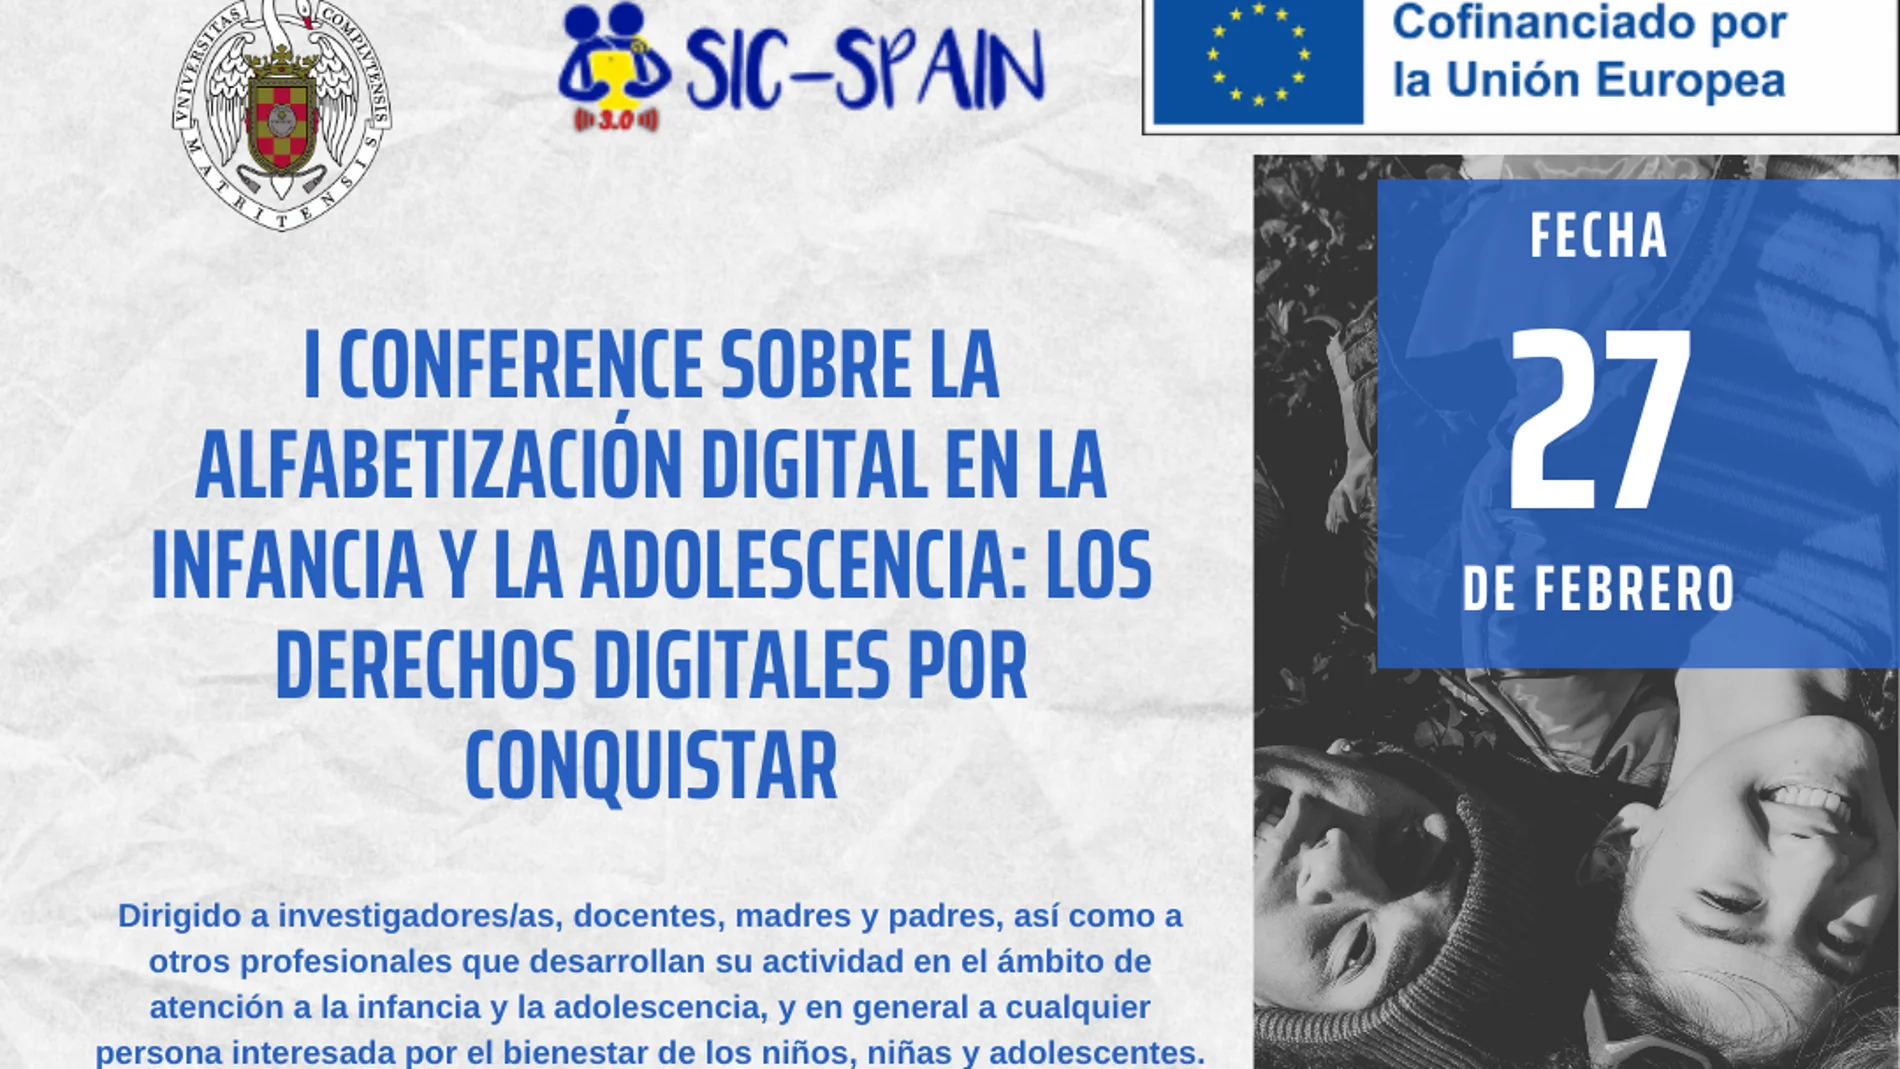 Cartel I Conference sobre la Alfabetización Digital en la Infancia y la Adolescencia